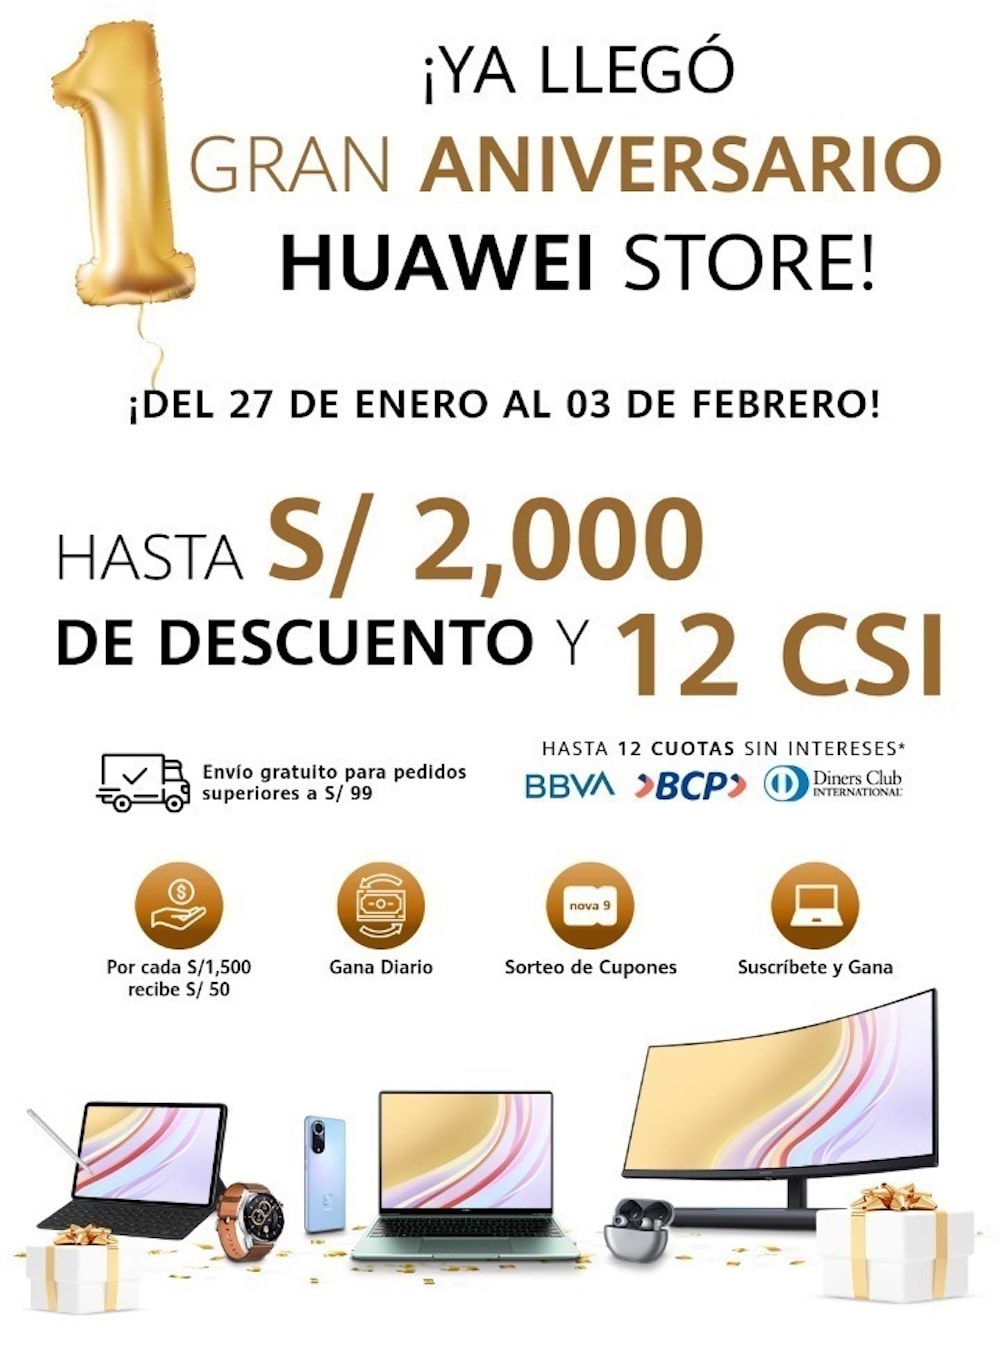 La Huawei Store celebra su aniversario con varias promociones